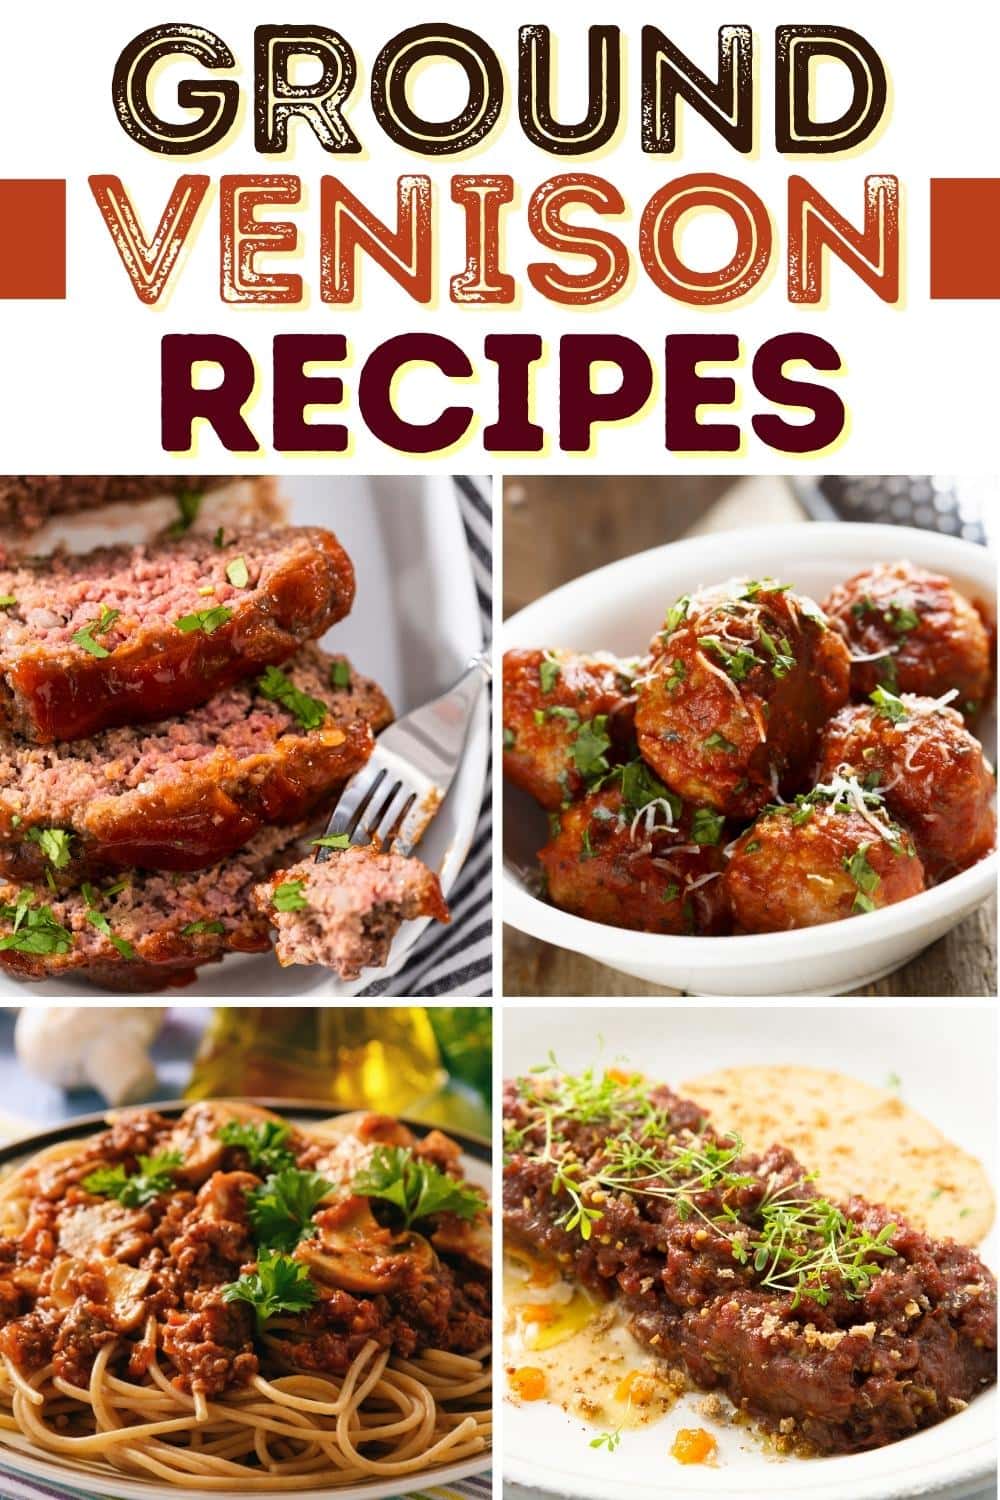 Ground Venison Recipes